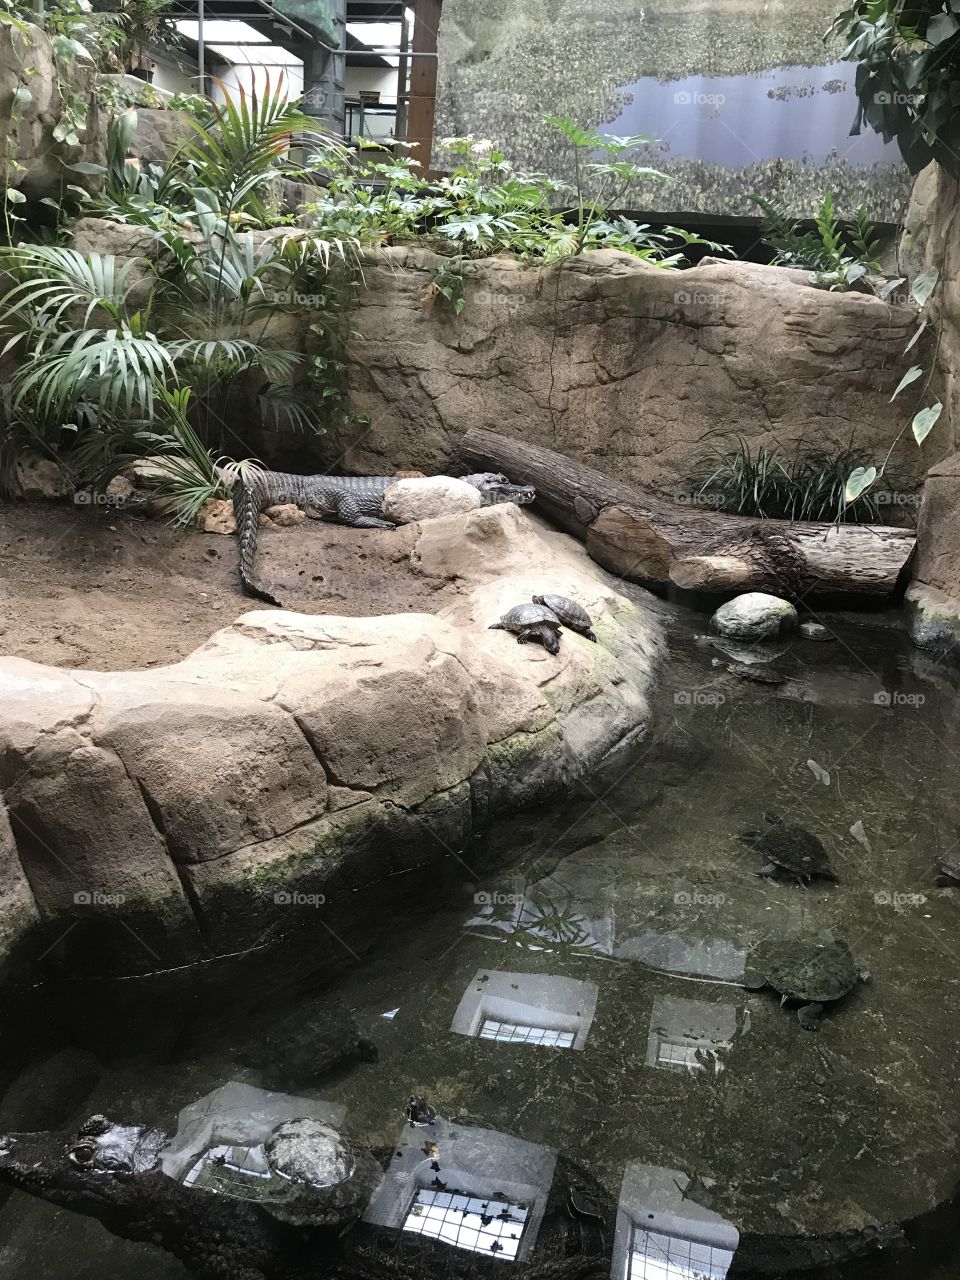 Crocs at the zoo